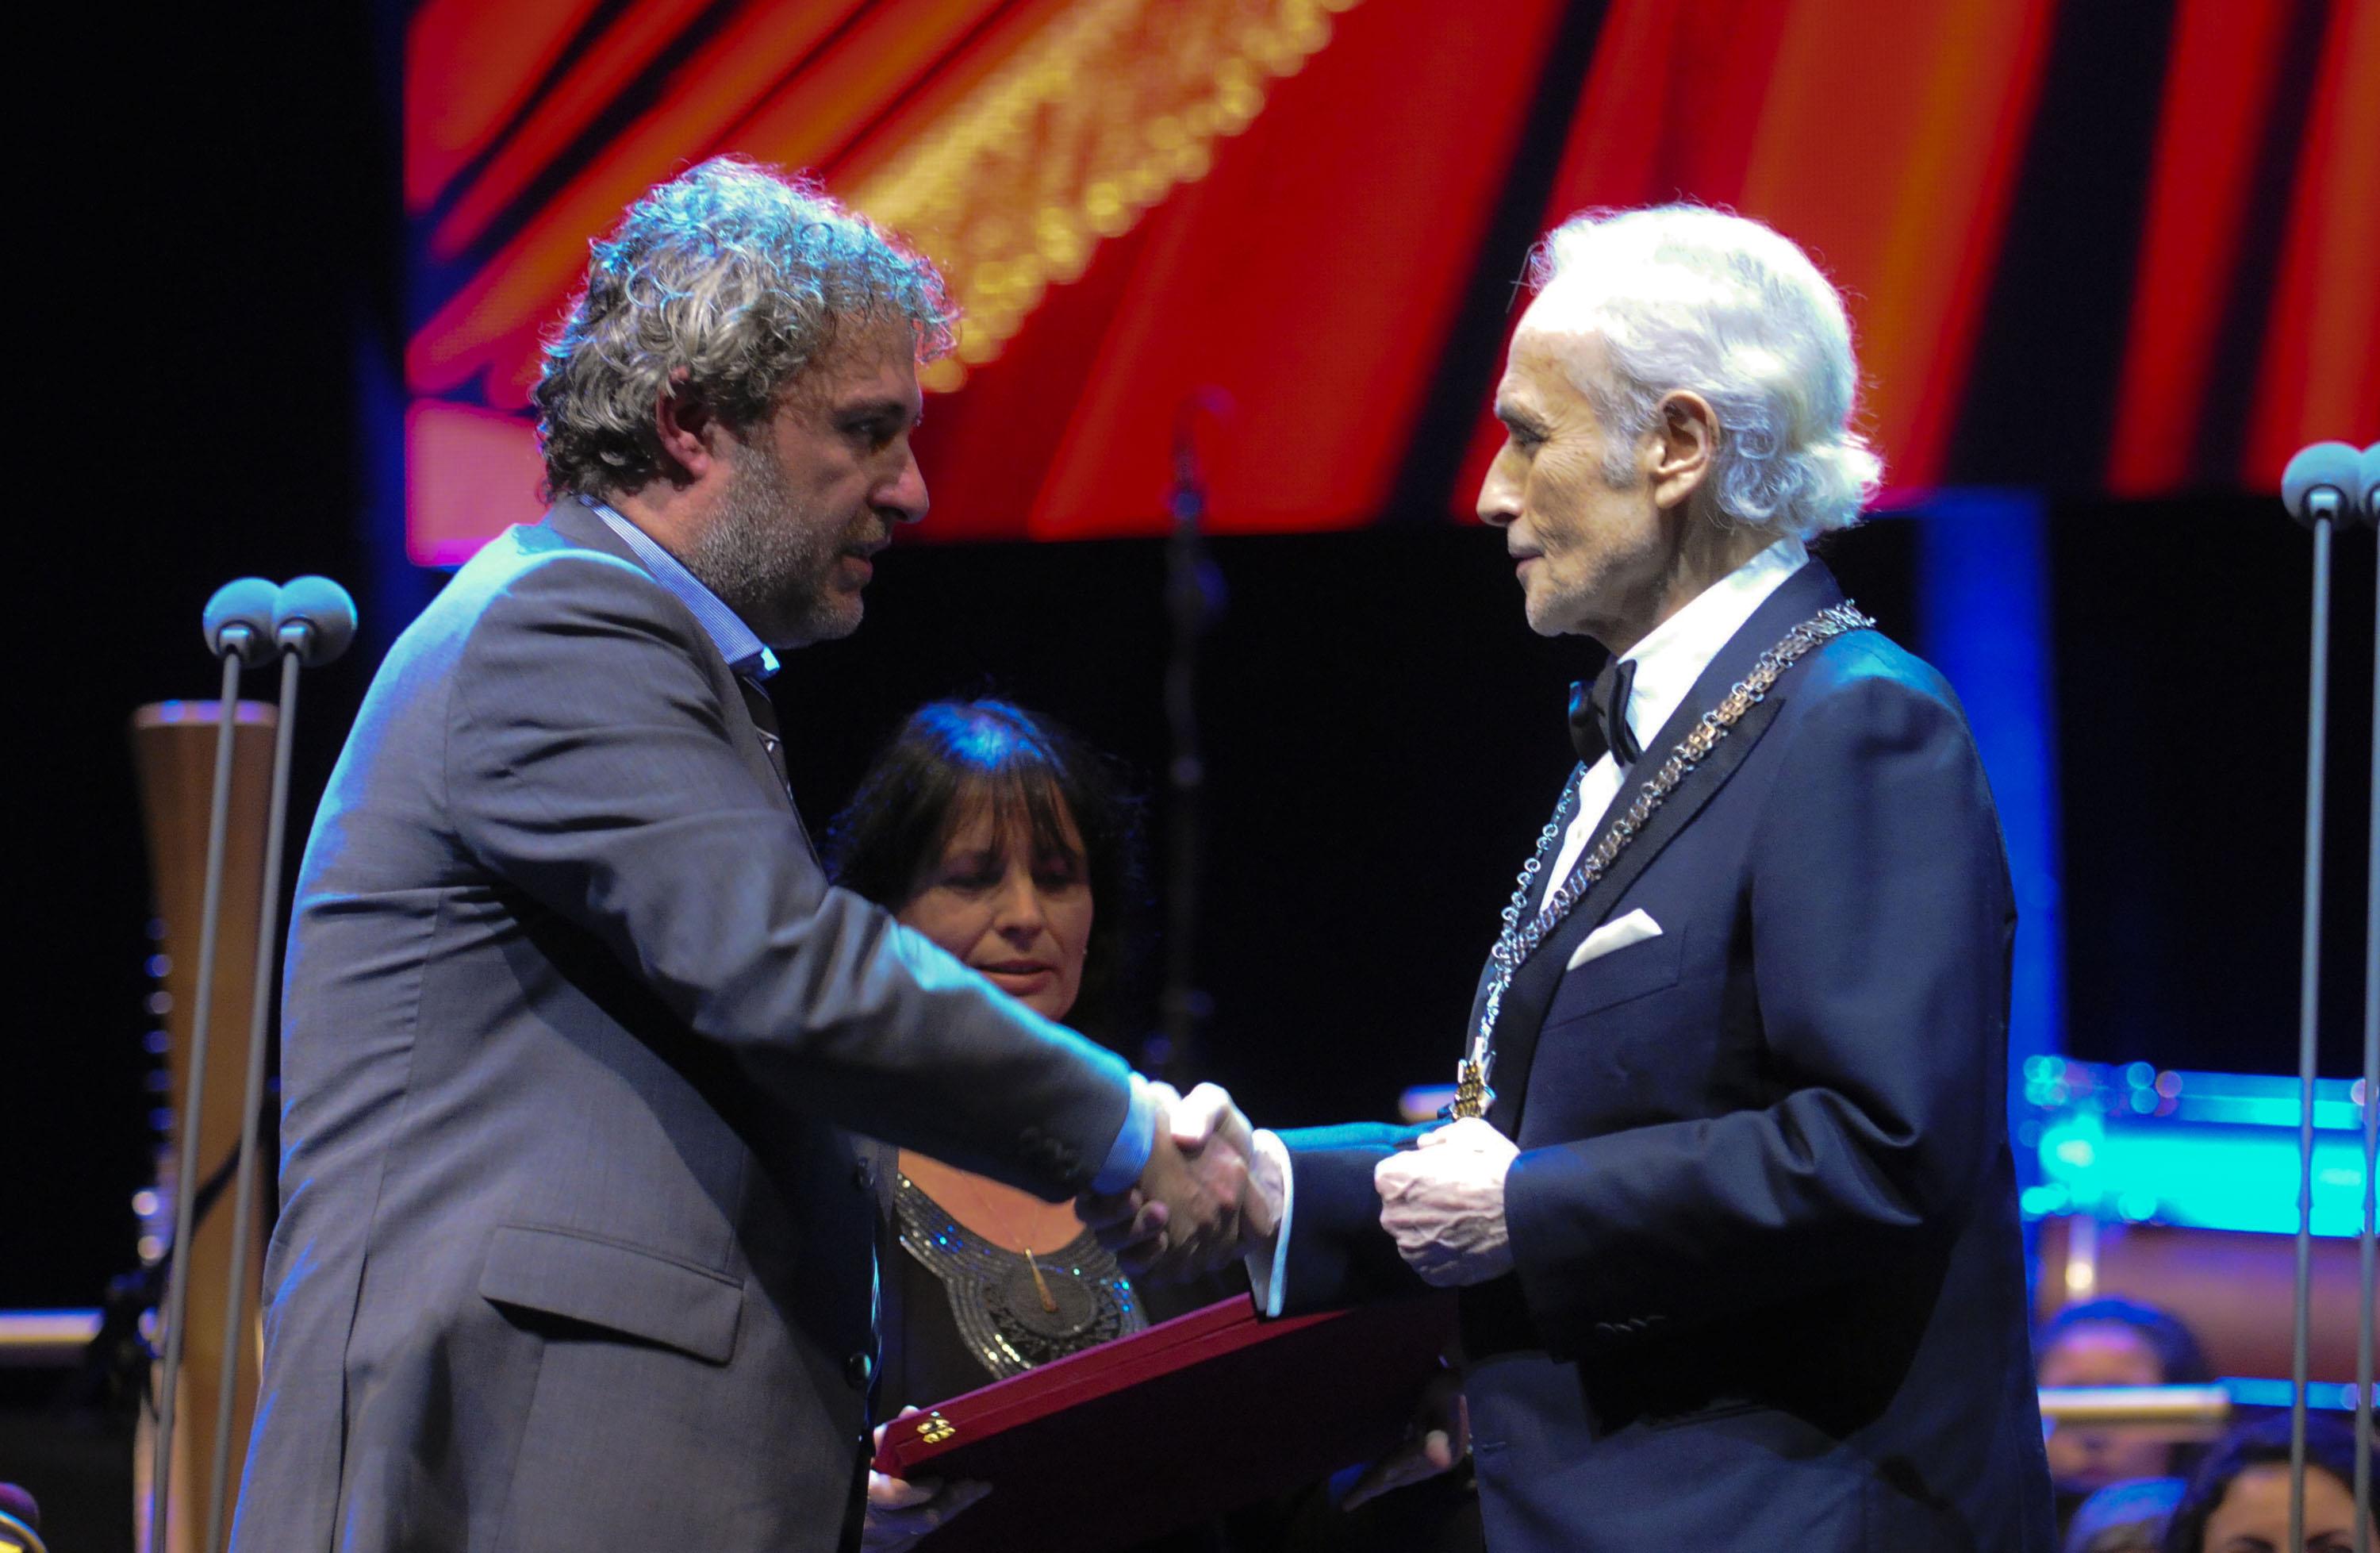 Заместник-министърът на културата Боил Банов връчва орден ”Златен век” на Хосе Карерас